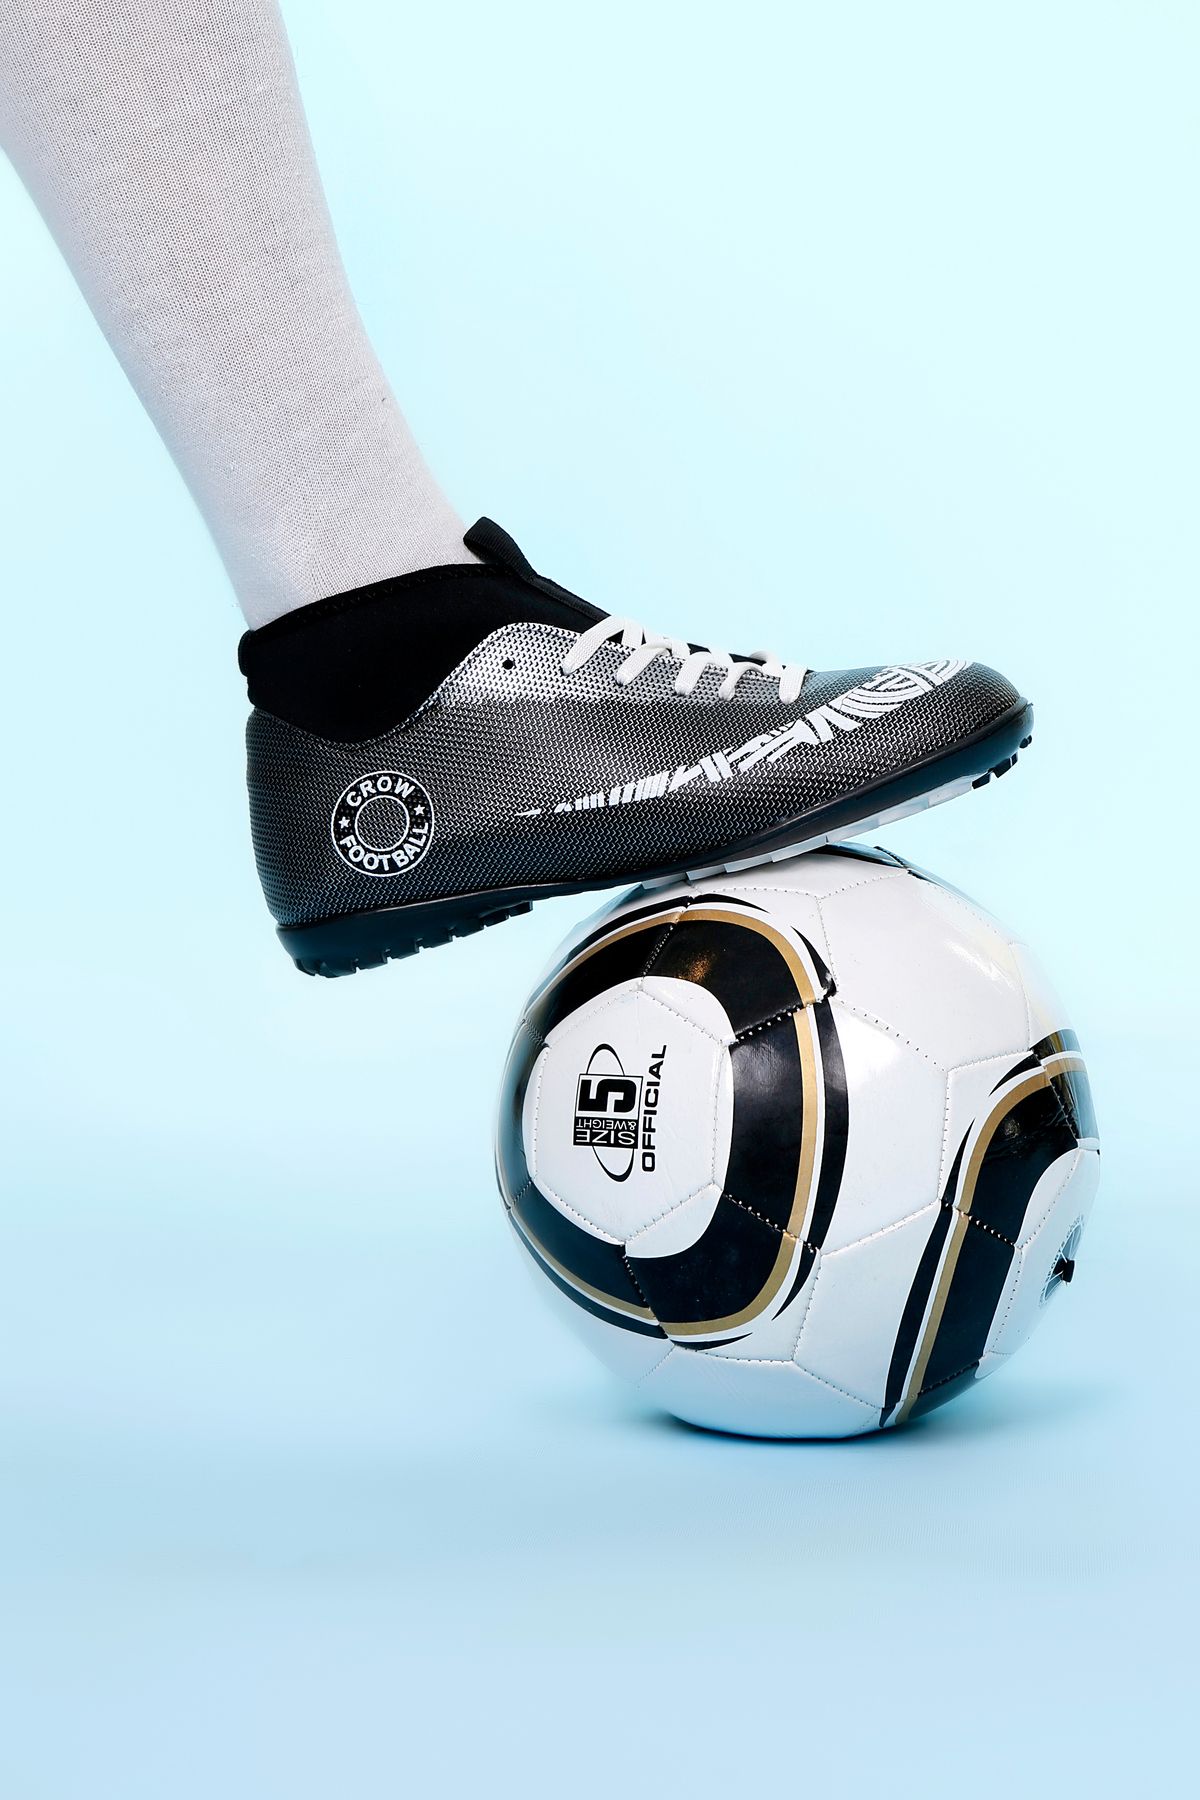 lord's ayakkabı Halı Saha Bilekli Siyah-Beyaz Unisex Futbol Ayakkabısı Garantili Lisanslı